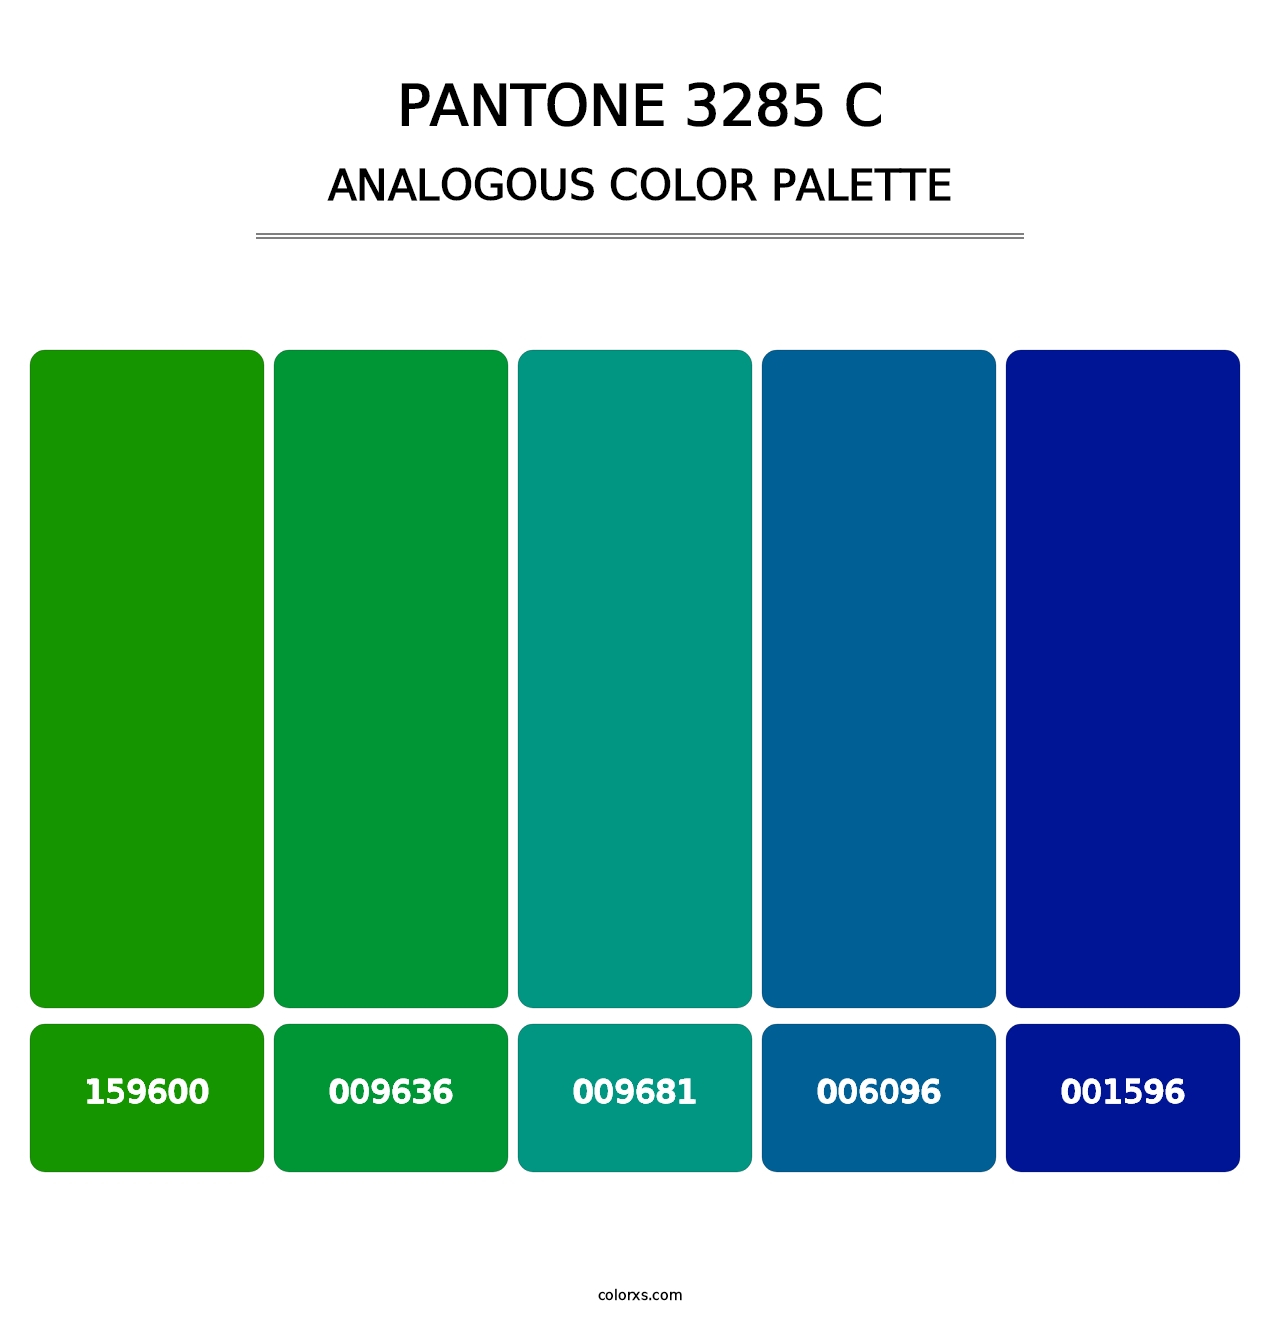 PANTONE 3285 C - Analogous Color Palette